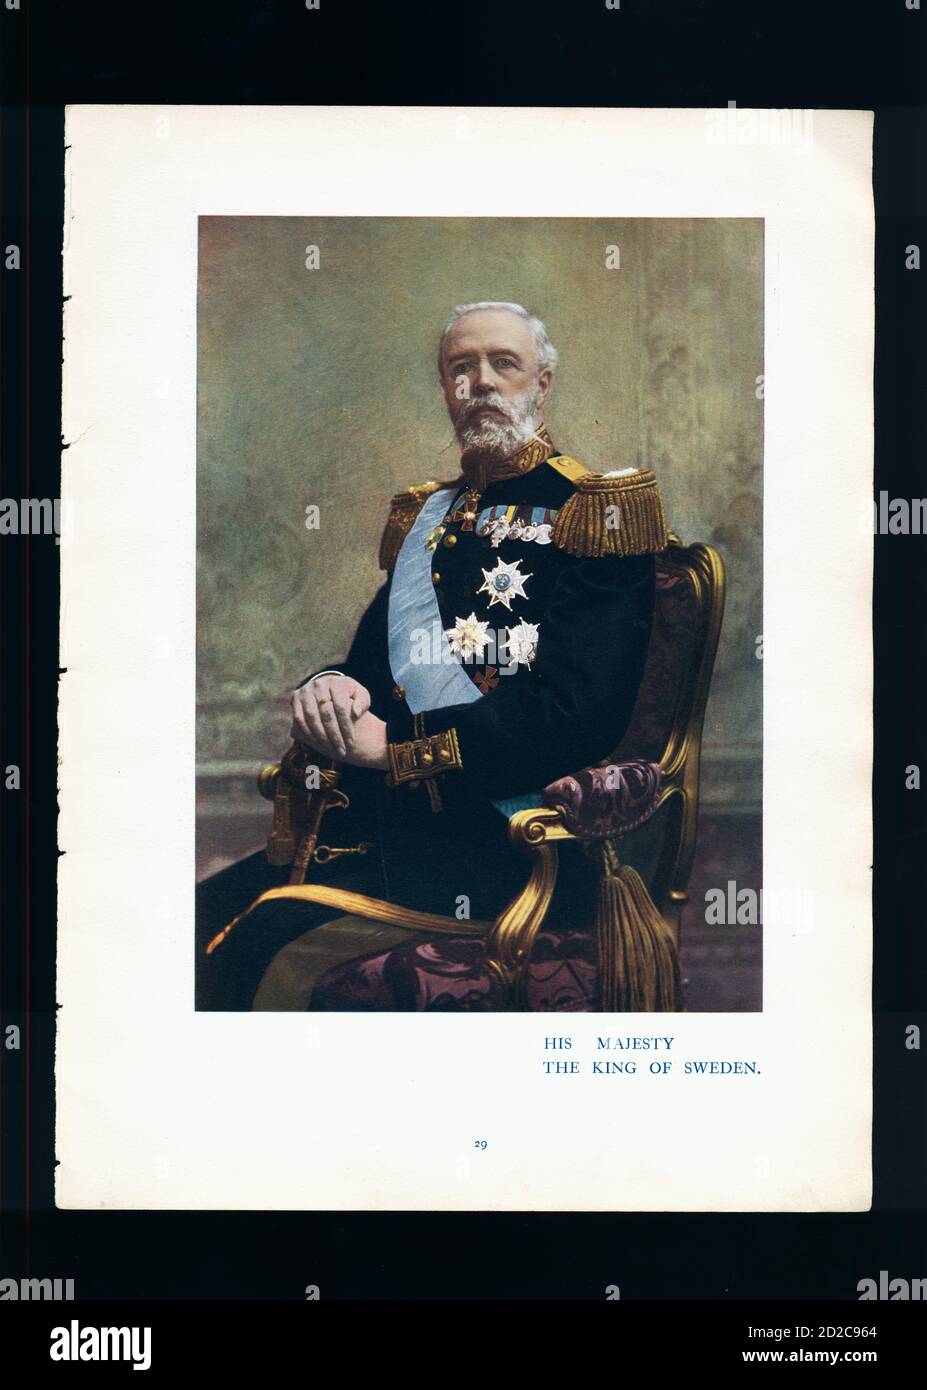 Portrait Chromolithographique du roi Oscar II de Suède (21 janvier 1829 – 8 décembre 1907). Il a régné du 18 septembre 1872 au 8 décembre 1907. IMAG Banque D'Images